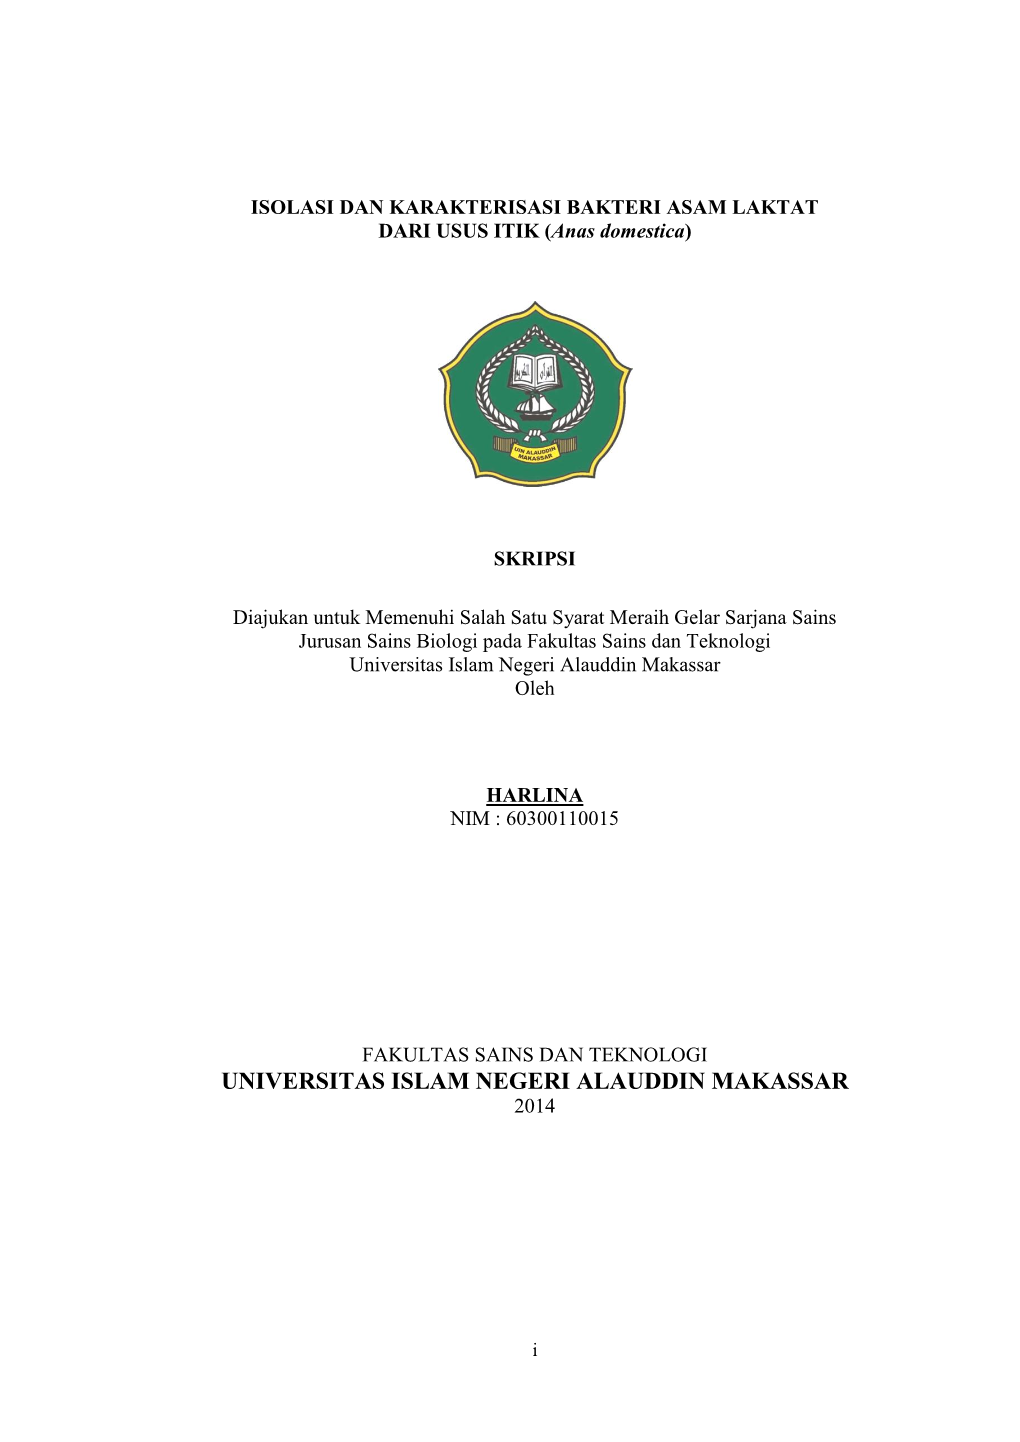 Universitas Islam Negeri Alauddin Makassar Oleh